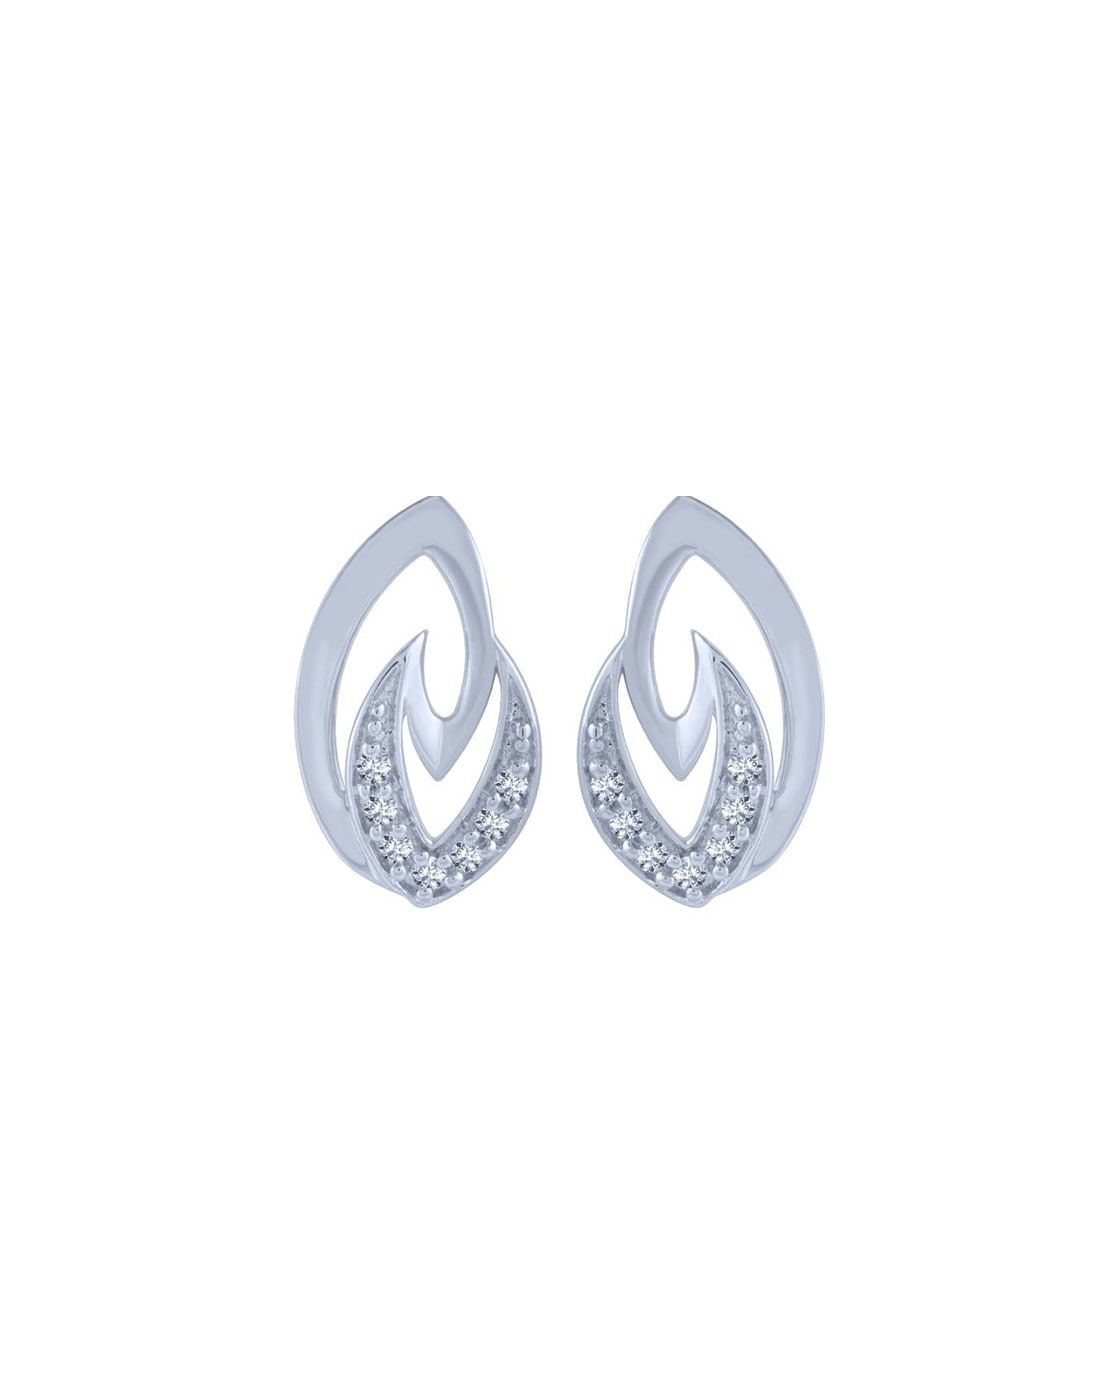 Buy Platinum Earrings PT0432 Online in India  Garner Bears